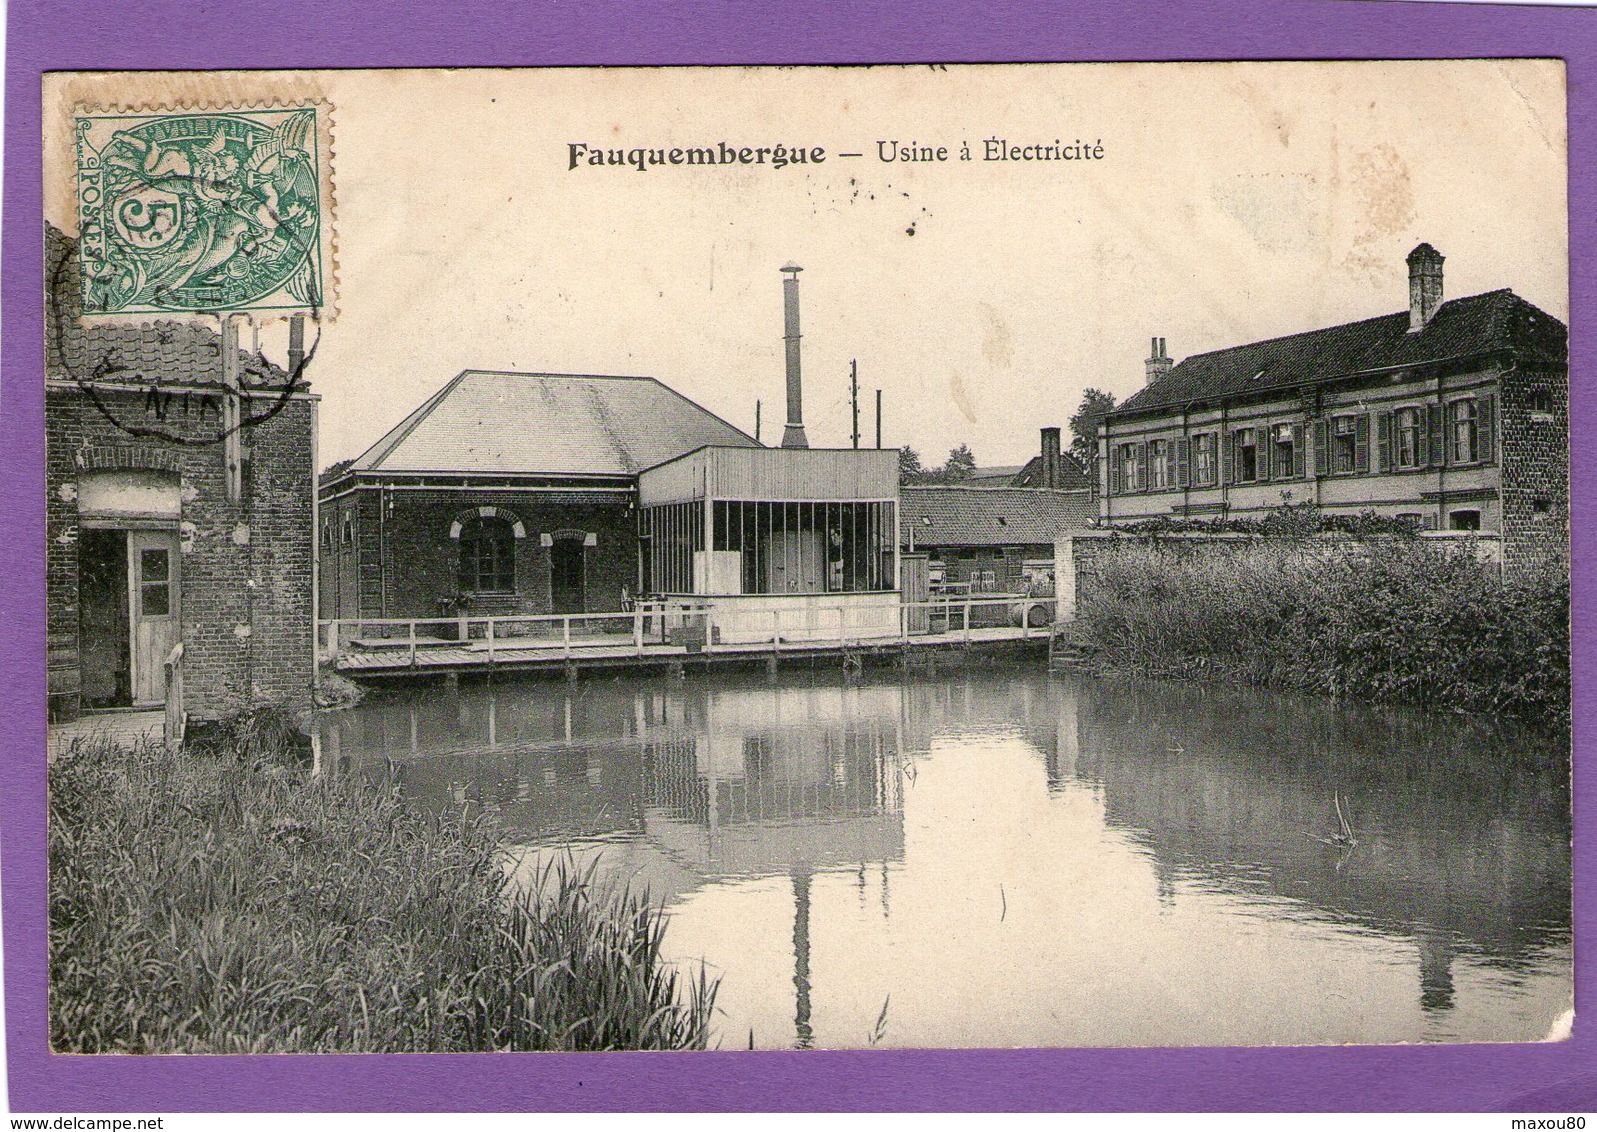 FAUQUEMBERGUES - Usine à Electricité - 1907 - - Fauquembergues